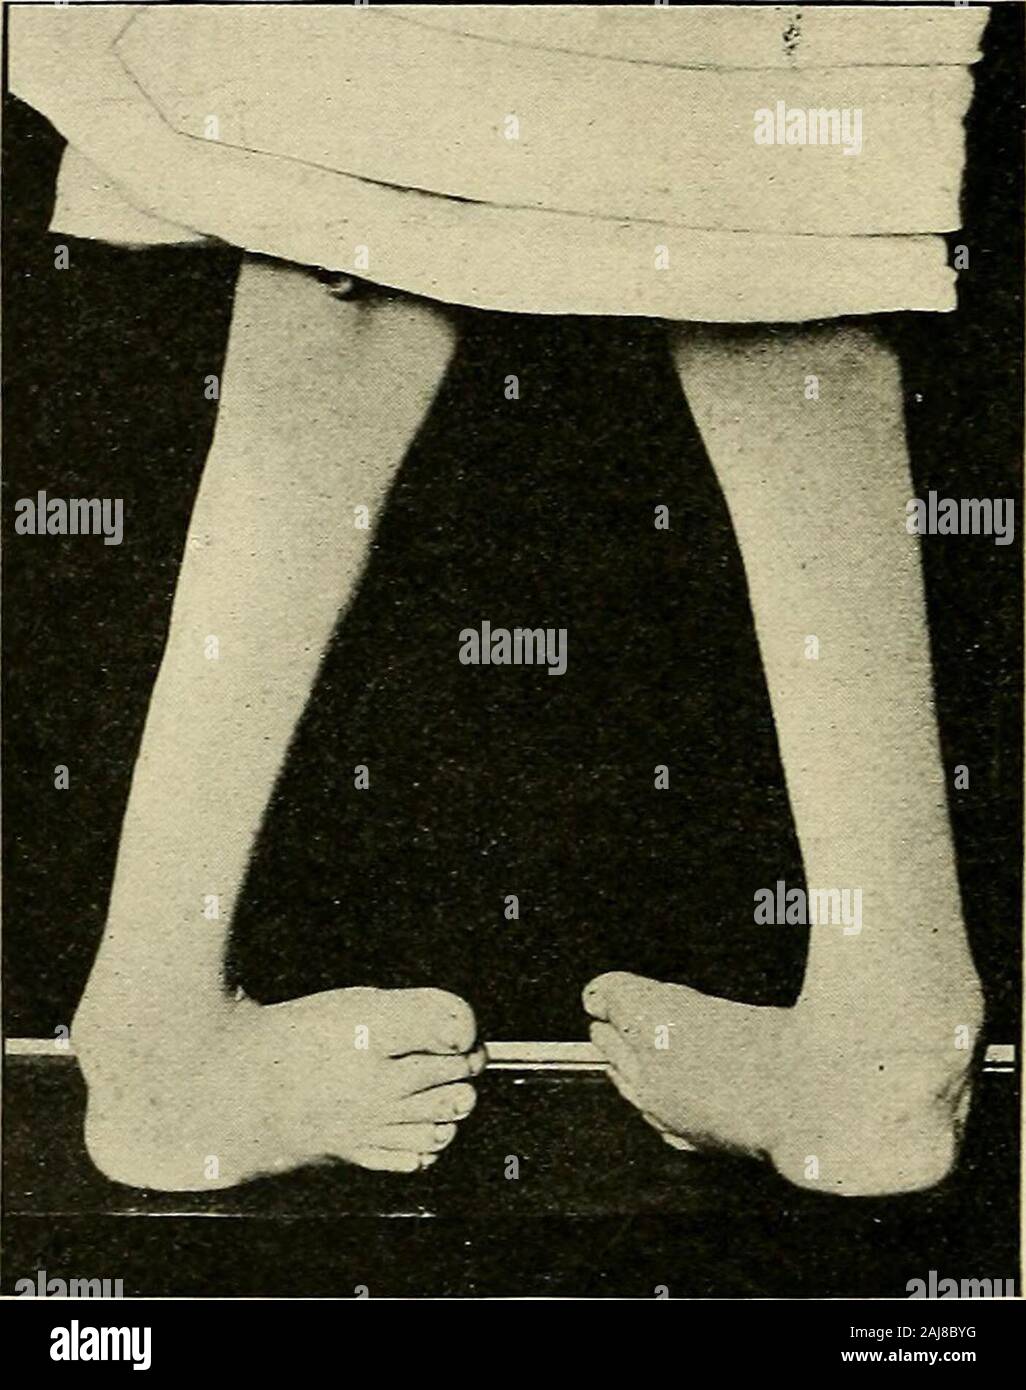 Un trattato di chirurgia ortopedica . Egli tabella la gamba è tenuto in posizione verticale. Questo allowsone per agganciare le dita sulle estremità del os calcis, mentreil la mano e il braccio disteso lungo la pianta del piede, può essere usedas una leva per forzare verso di flessione dorsale come os calcis isdrawn verso il basso. In questo modo lo stiramento forzato è la con-tinued fino al dorso del piede può essere portato quasi intoapposition con la cresta della tibia. Quando il funzionamento hasbeen completato il piede deve essere perfettamente limp. Esso è di solito52 818 OETHOPEDIC SrSGEEY. someTvhat congestionato dalla pressione delle dita, Foto Stock